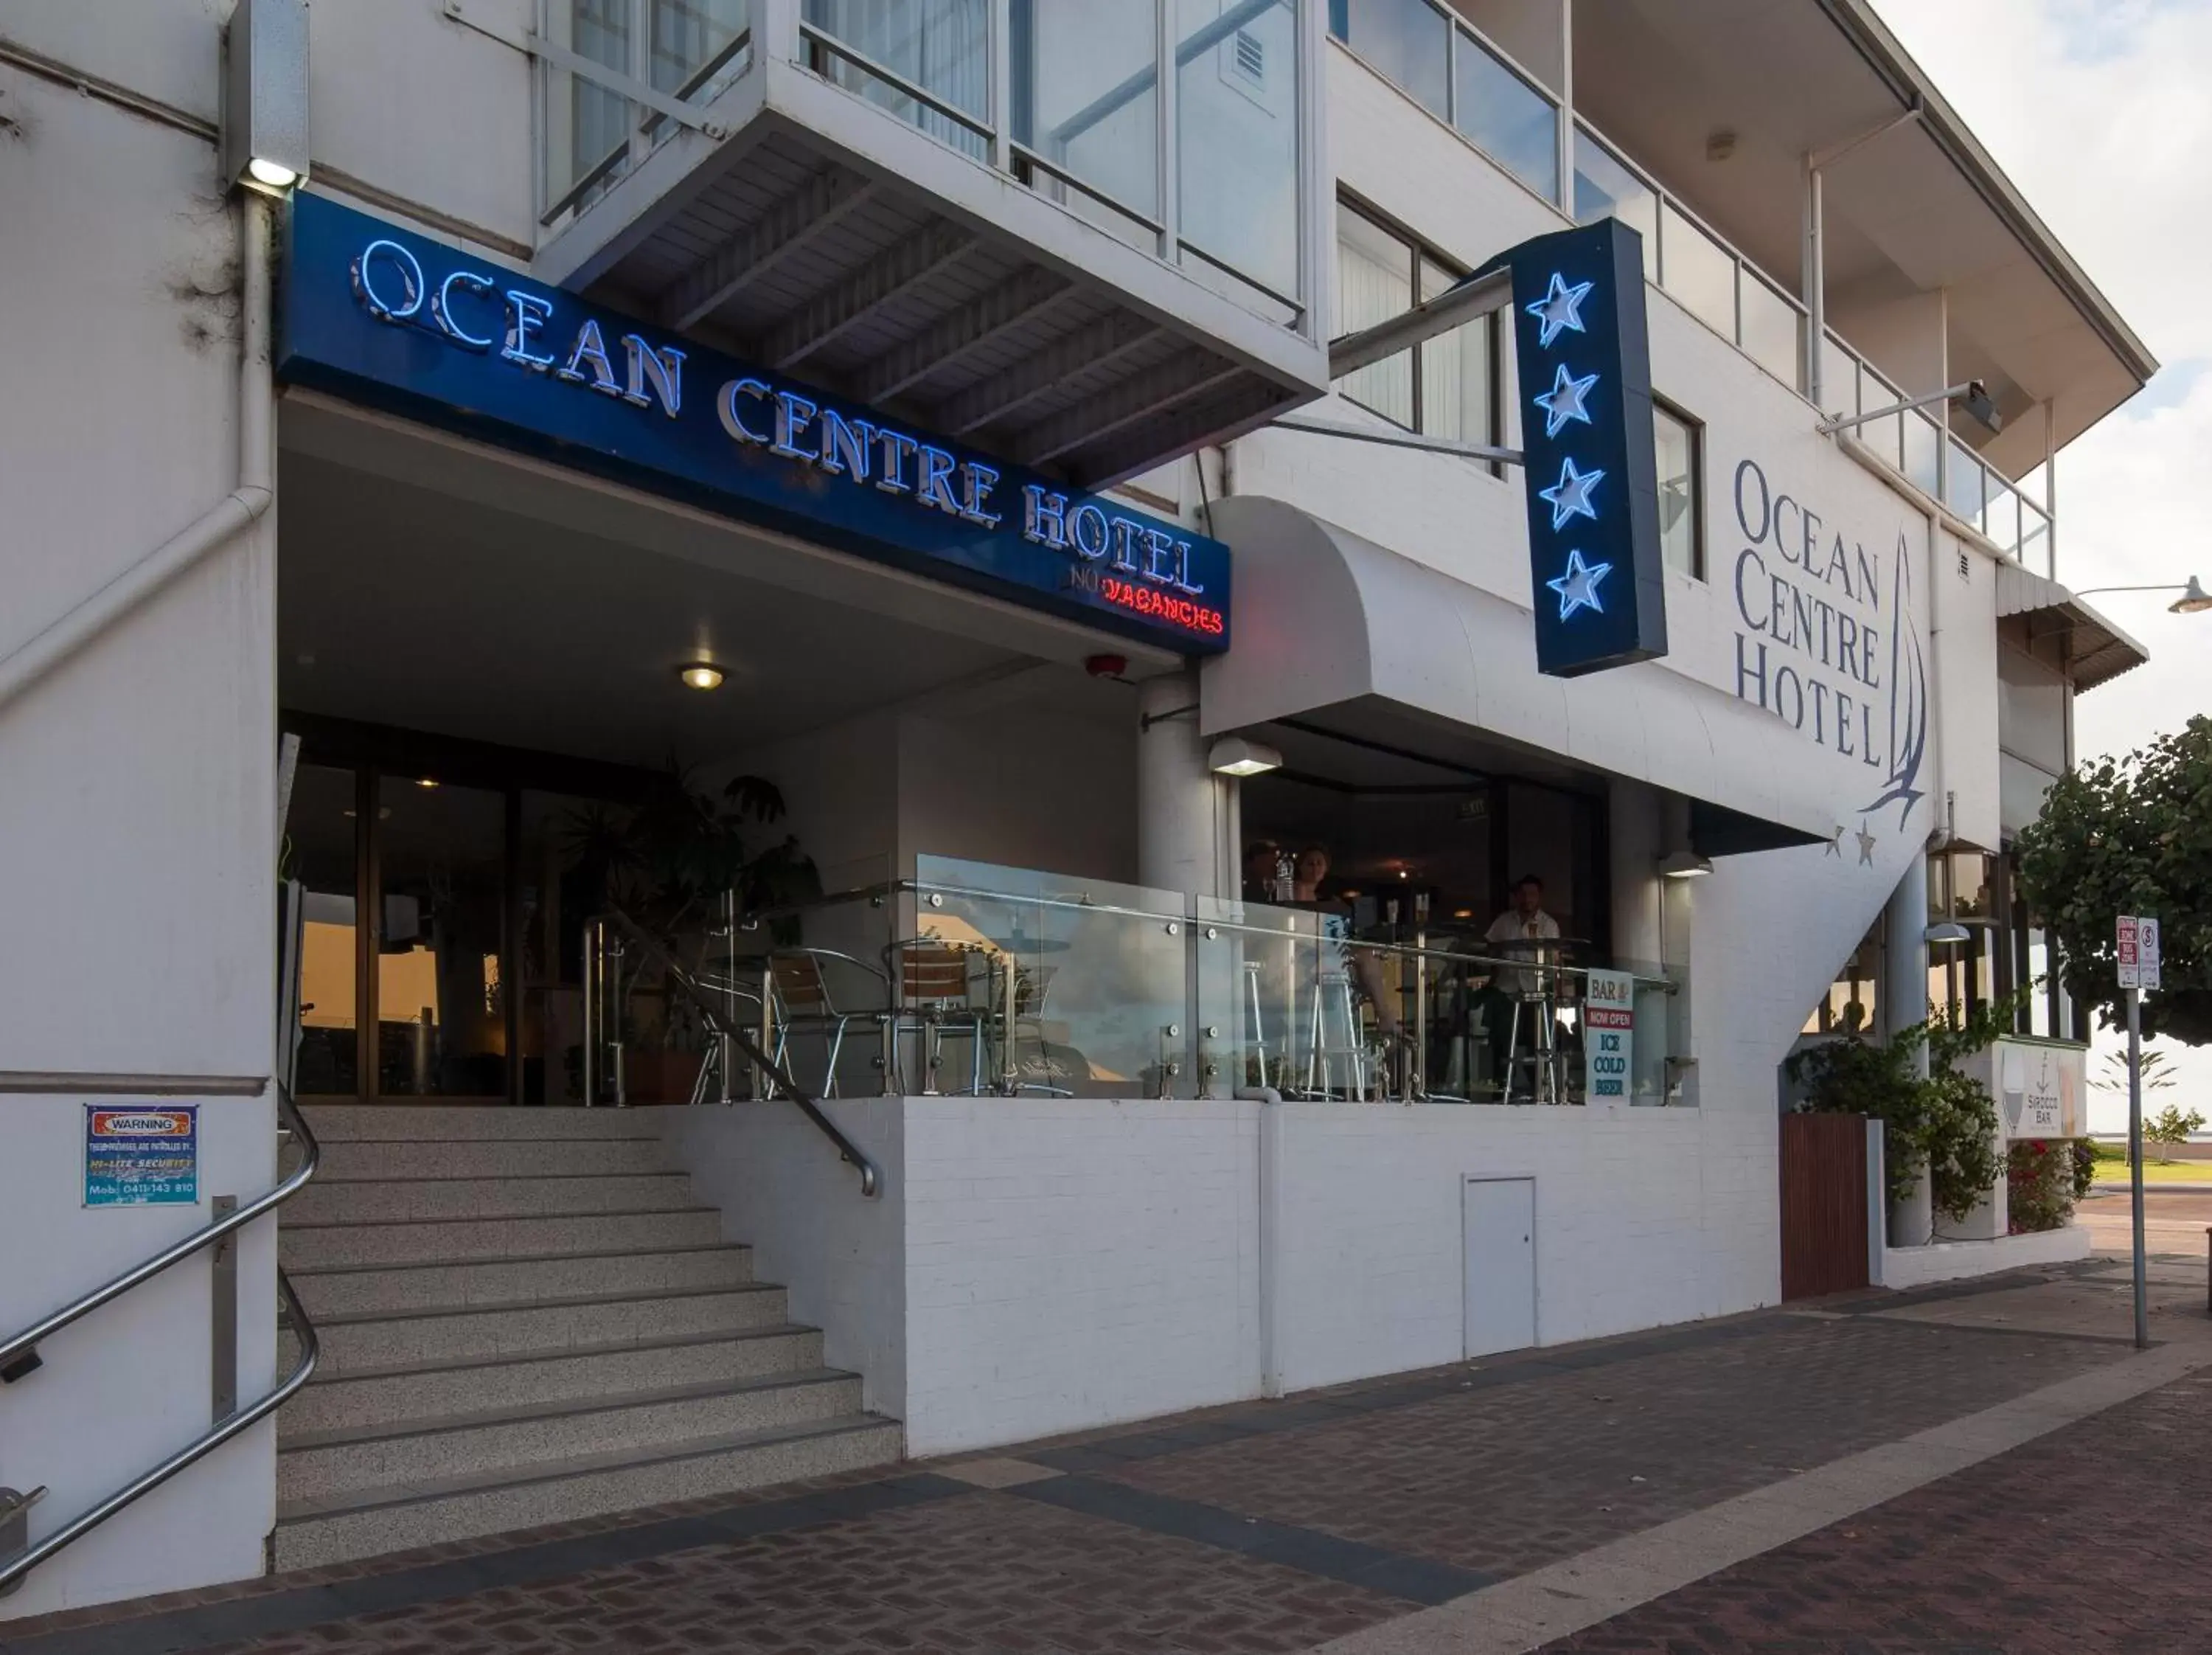 Facade/entrance in Ocean Centre Hotel